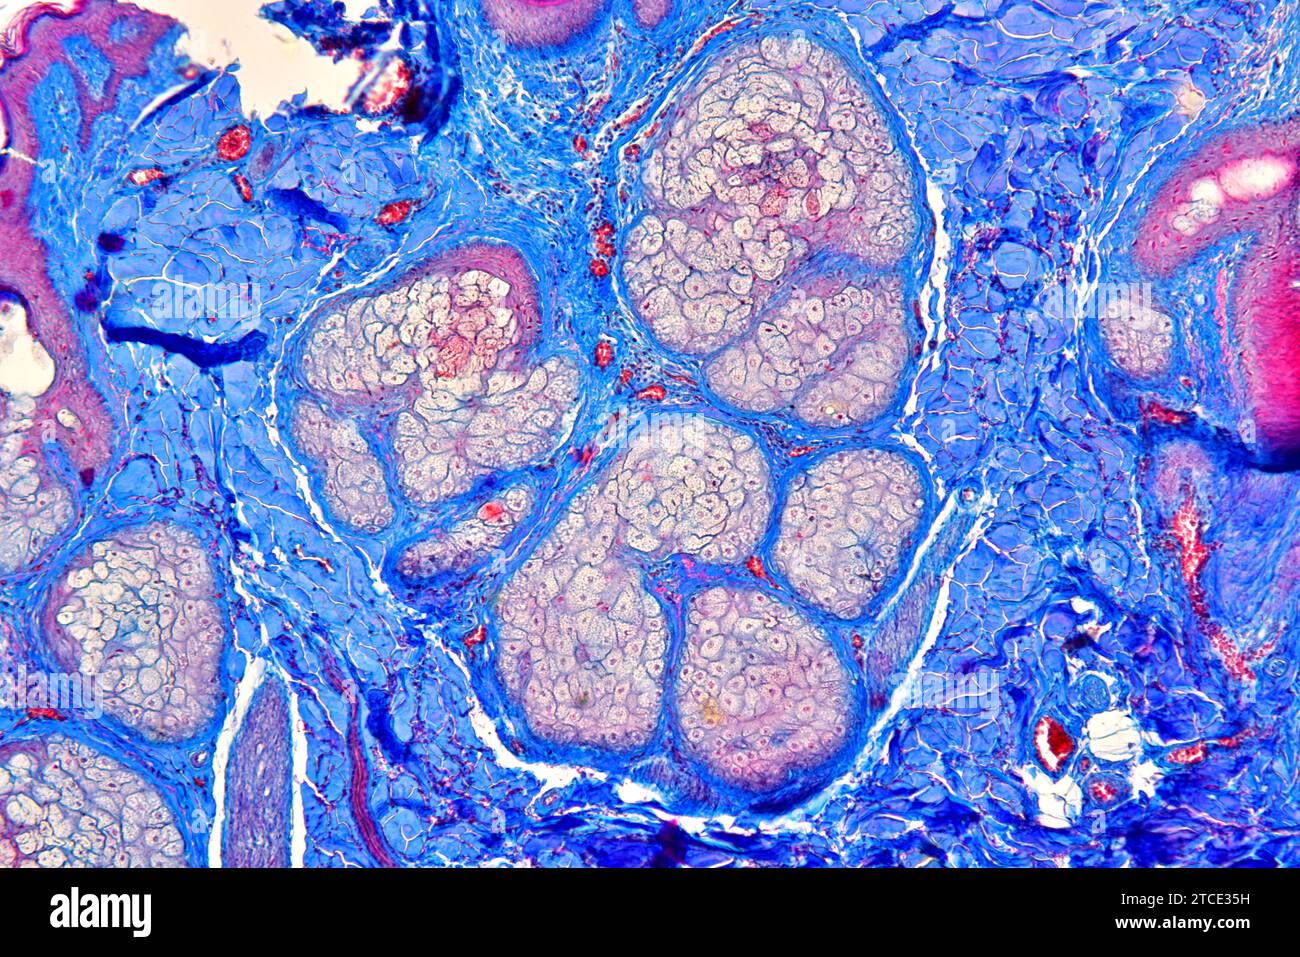 Sezione trasversale del cuoio capelluto umano che mostra ghiandole sebacee e tessuto fibroso. Microscopio ottico X100. Foto Stock